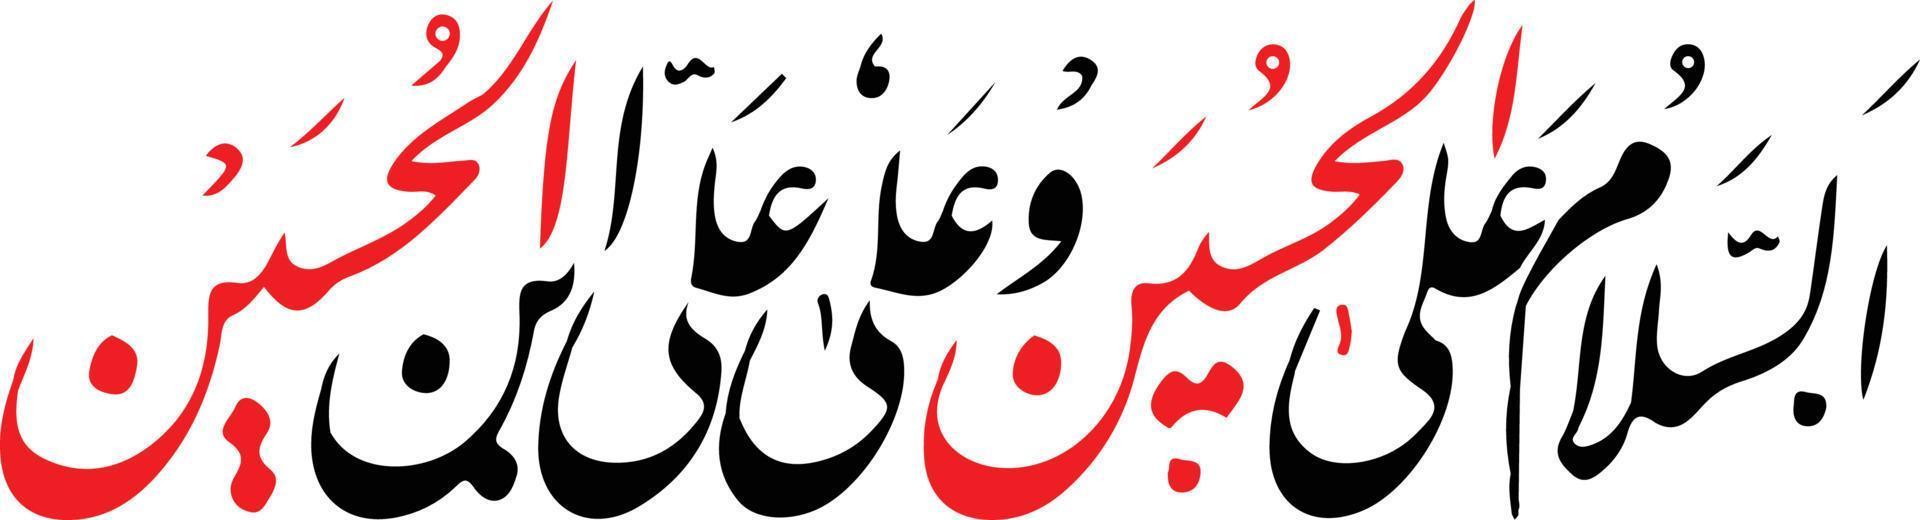 slaam islámico urdu caligrafía vector libre